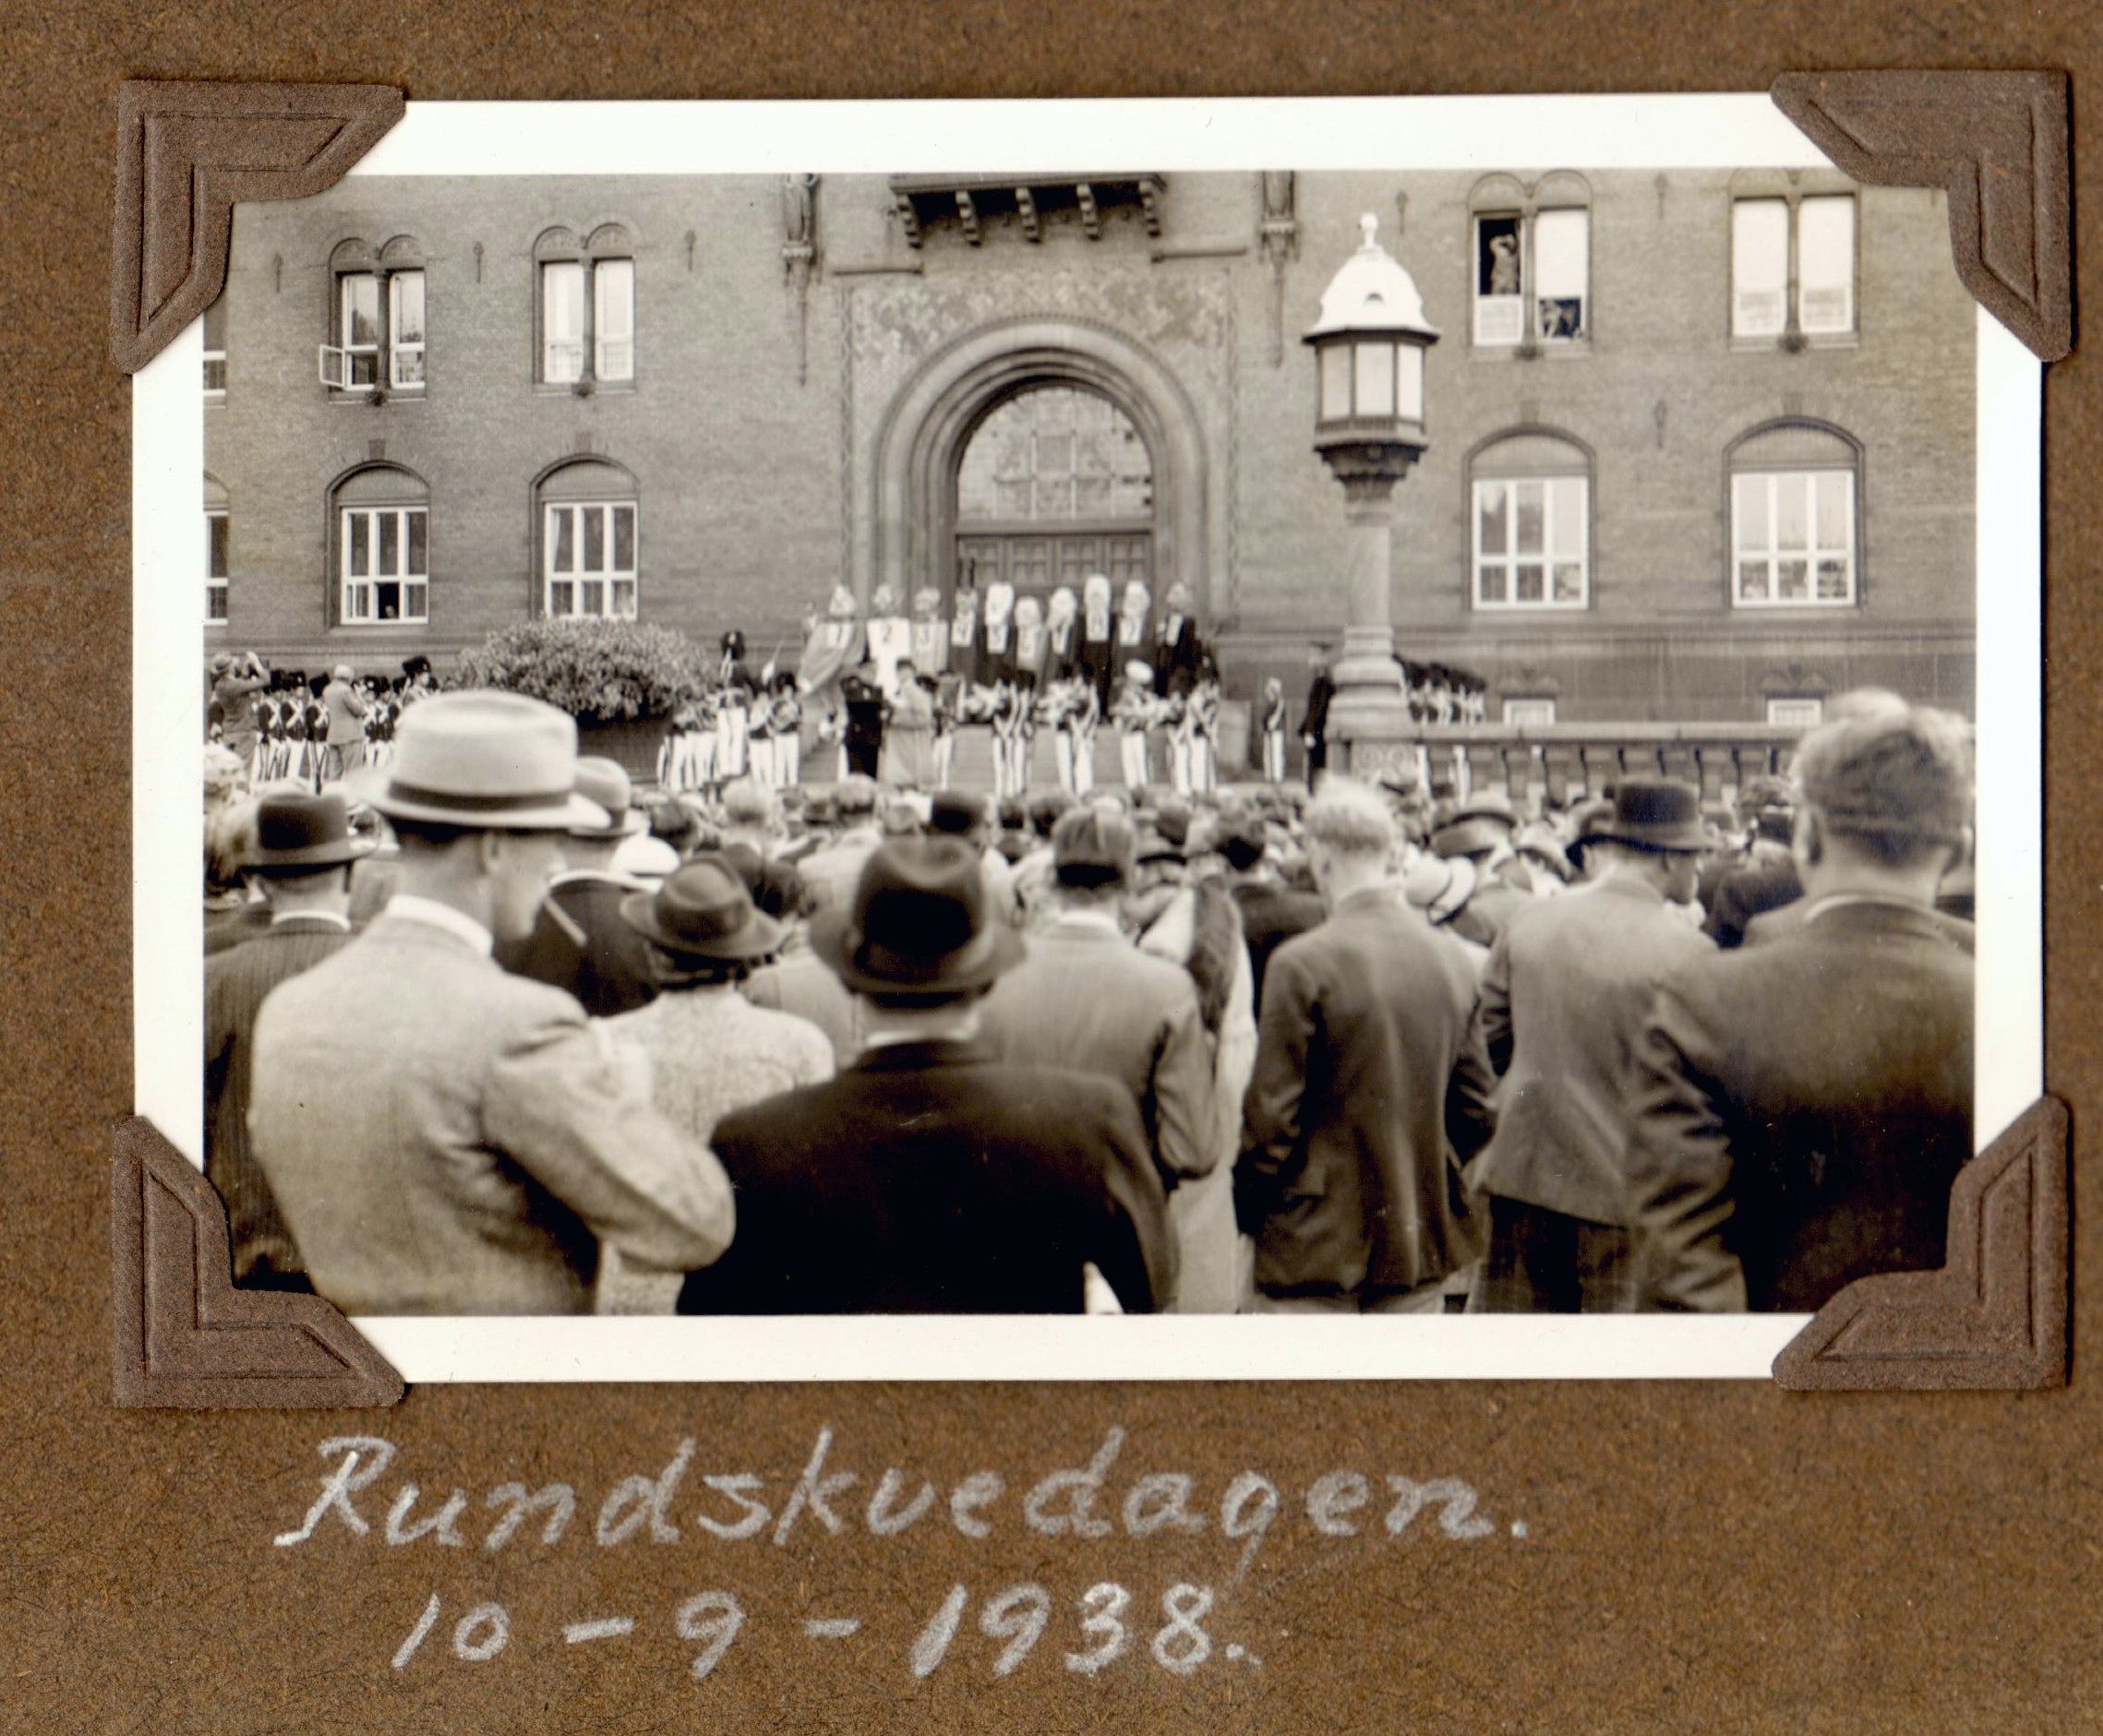 70.145 Rundskuedag, København 1938